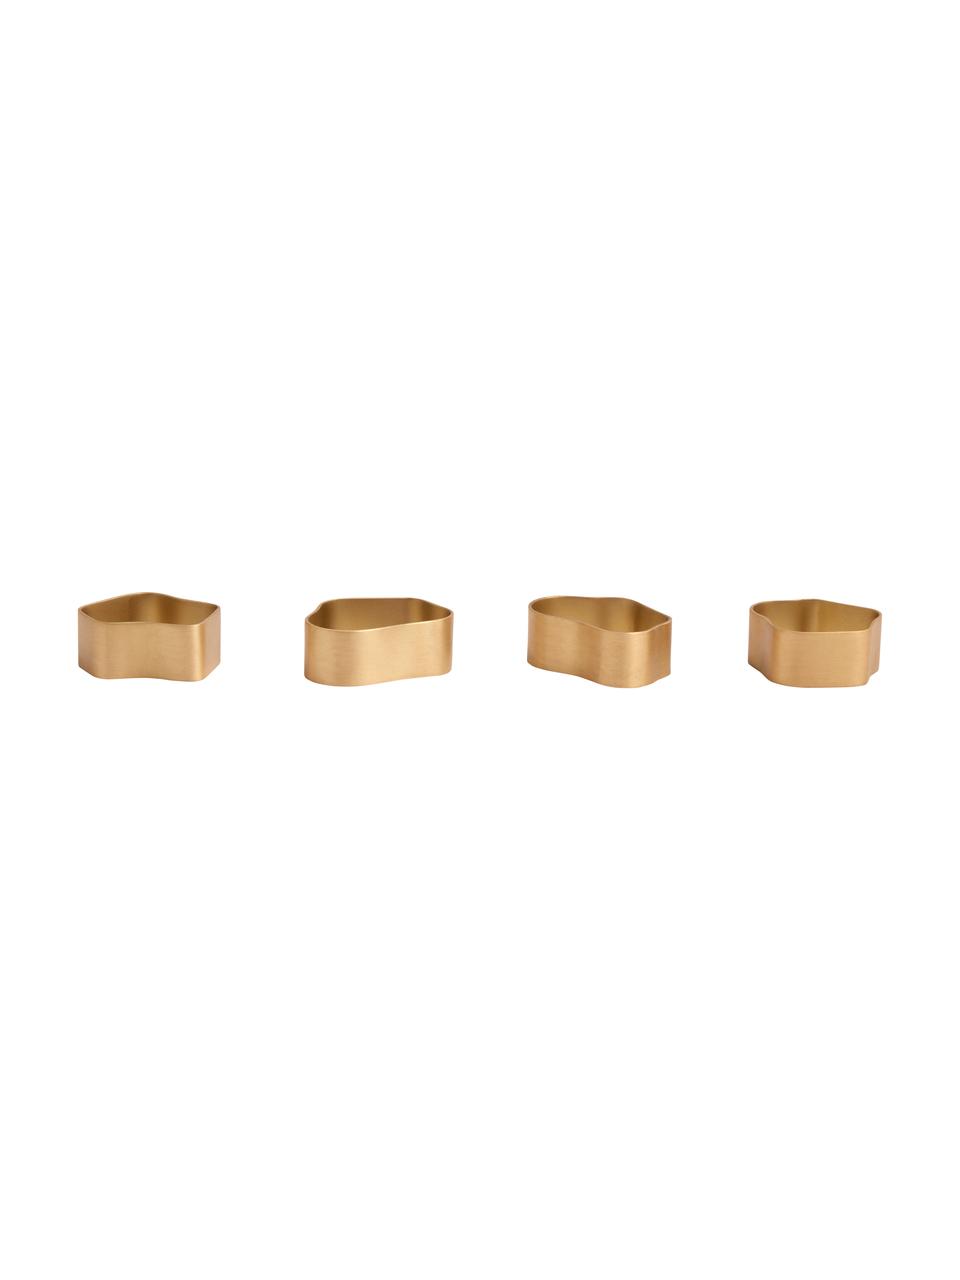 Serviettenringe Capri aus Messing, 4er-Set, Messing, gebürstet, Goldfarben, Set mit verschiedenen Größen